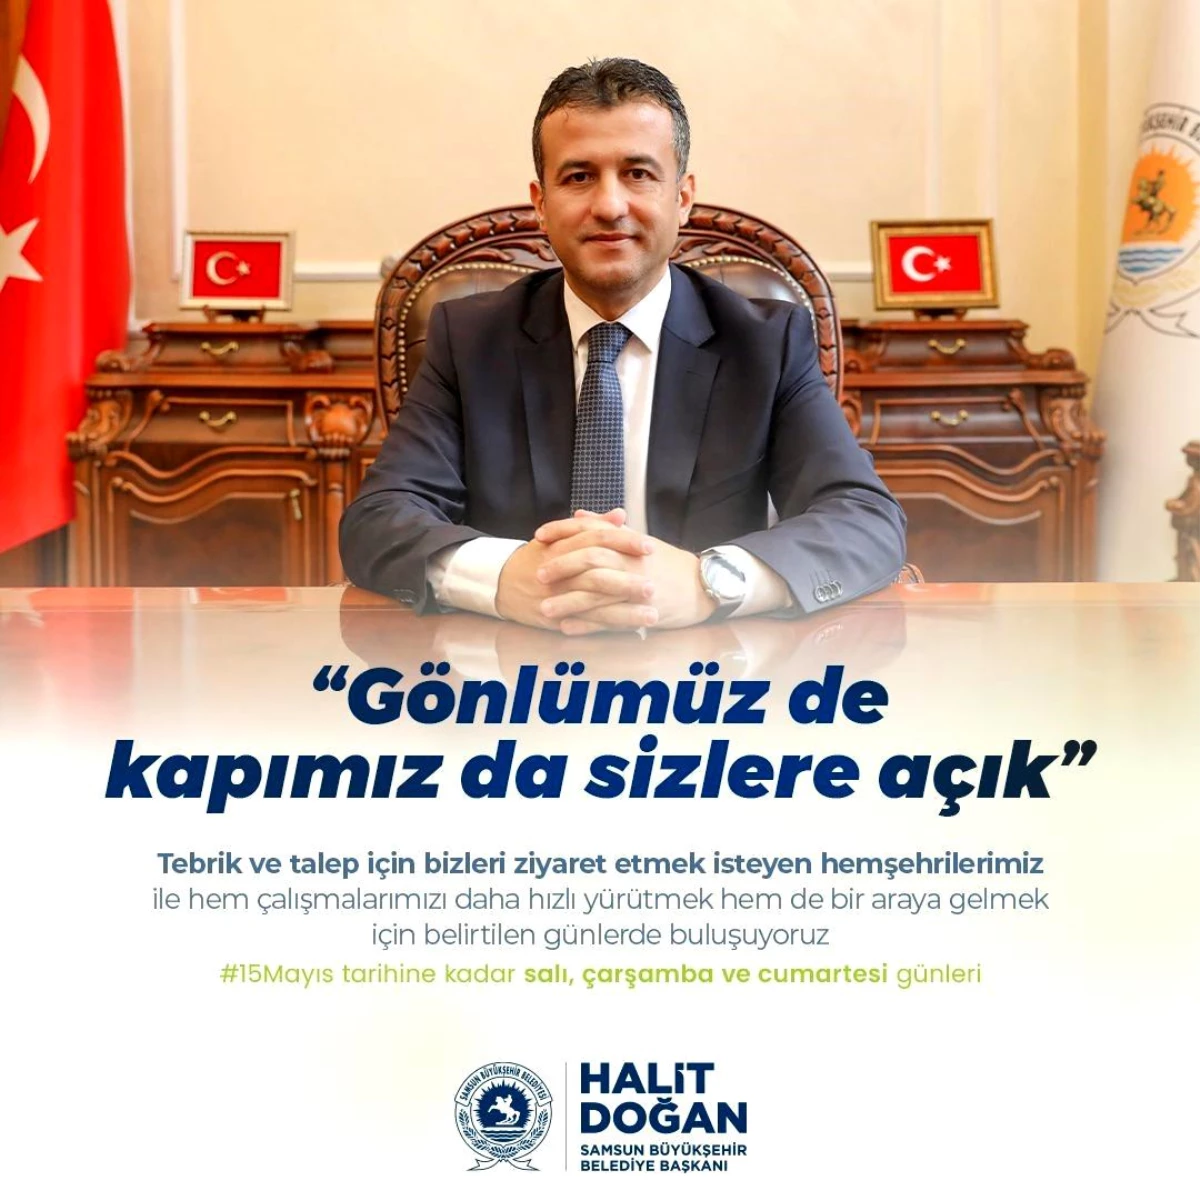 Samsun Büyükşehir Belediye Başkanı Halit Doğan, tebrik ziyaretlerini kabul ediyor